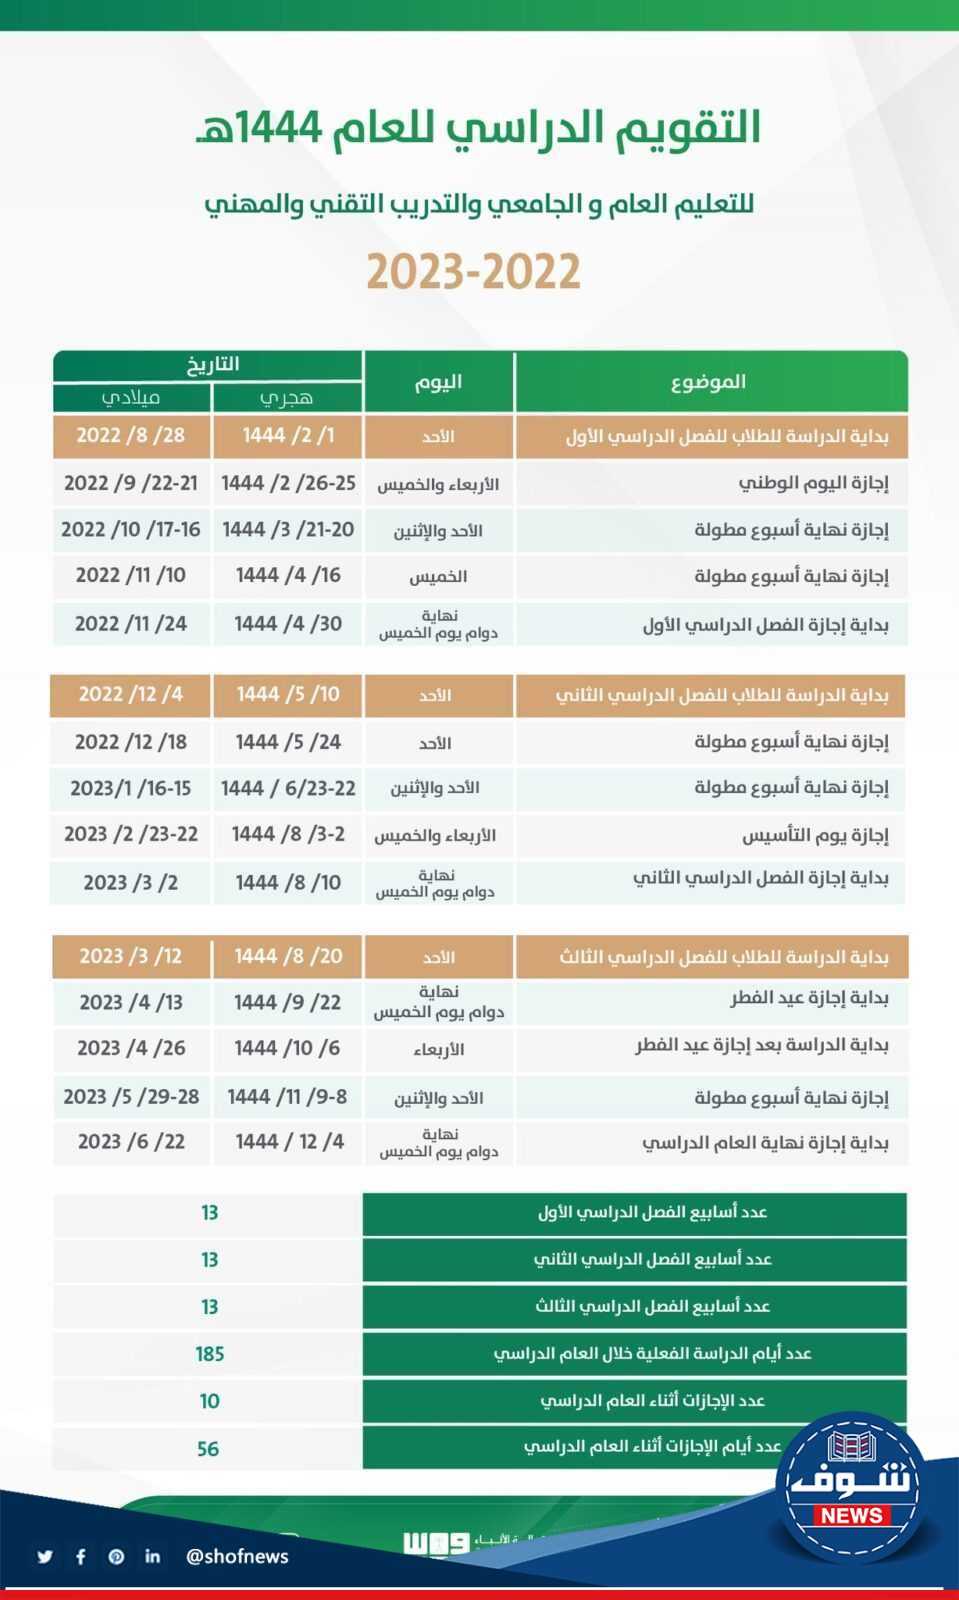 رسمياً موعد بدء الدراسة في السعودية وفق التقويم الدراسي ١٤٤٥